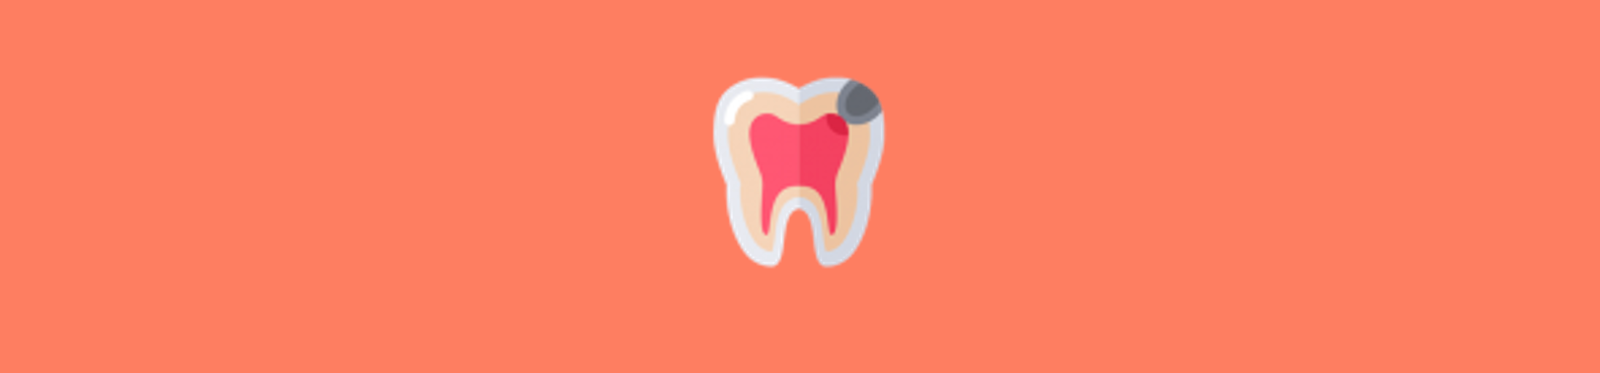 Dente com cárie – Problemas na boca